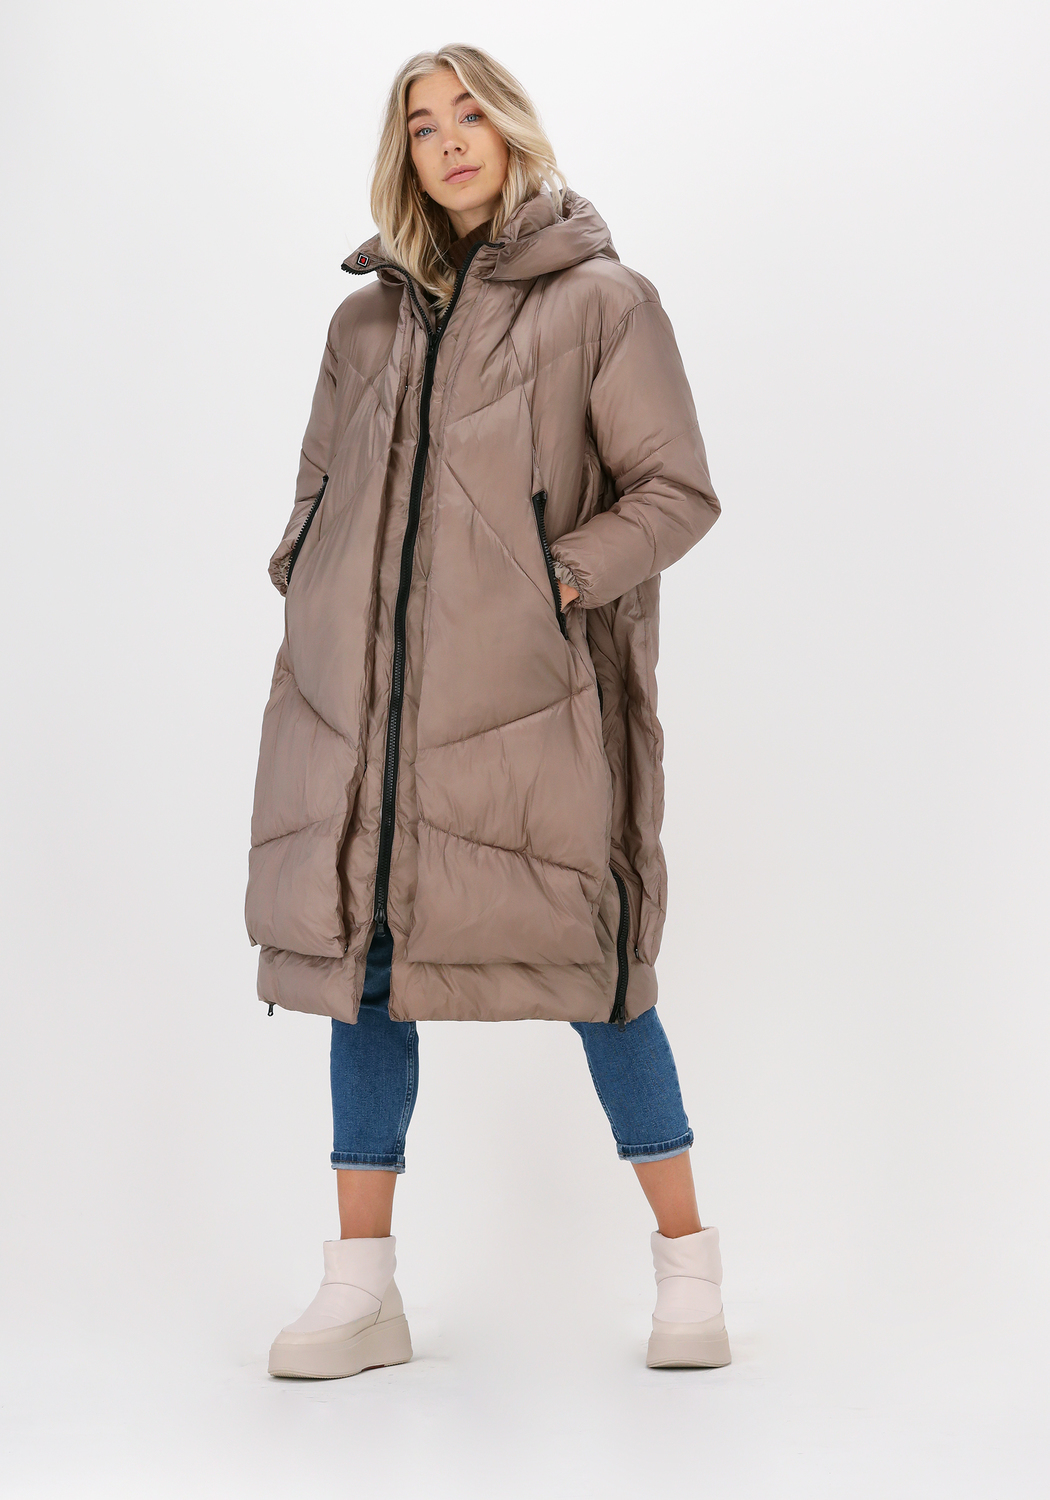 Damen Bekleidung Jacken Freizeitjacken Canadian Wattierte Jack Eugenie Lg Satin Nicht-gerade in Natur 